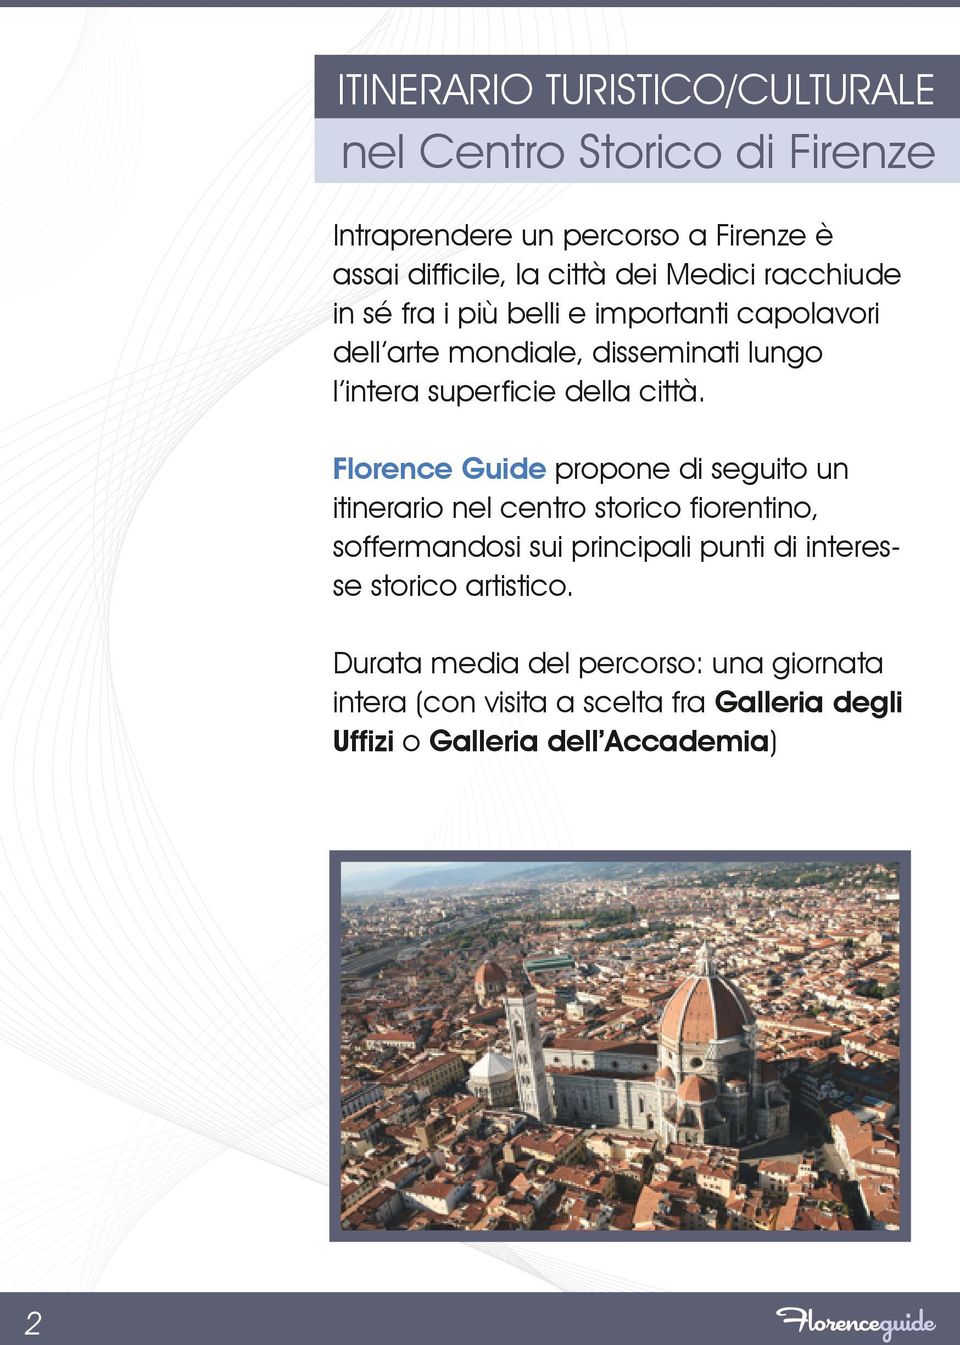 Florence Guide propone di seguito un itinerario nel centro storico fiorentino, soffermandosi sui principali punti di interesse